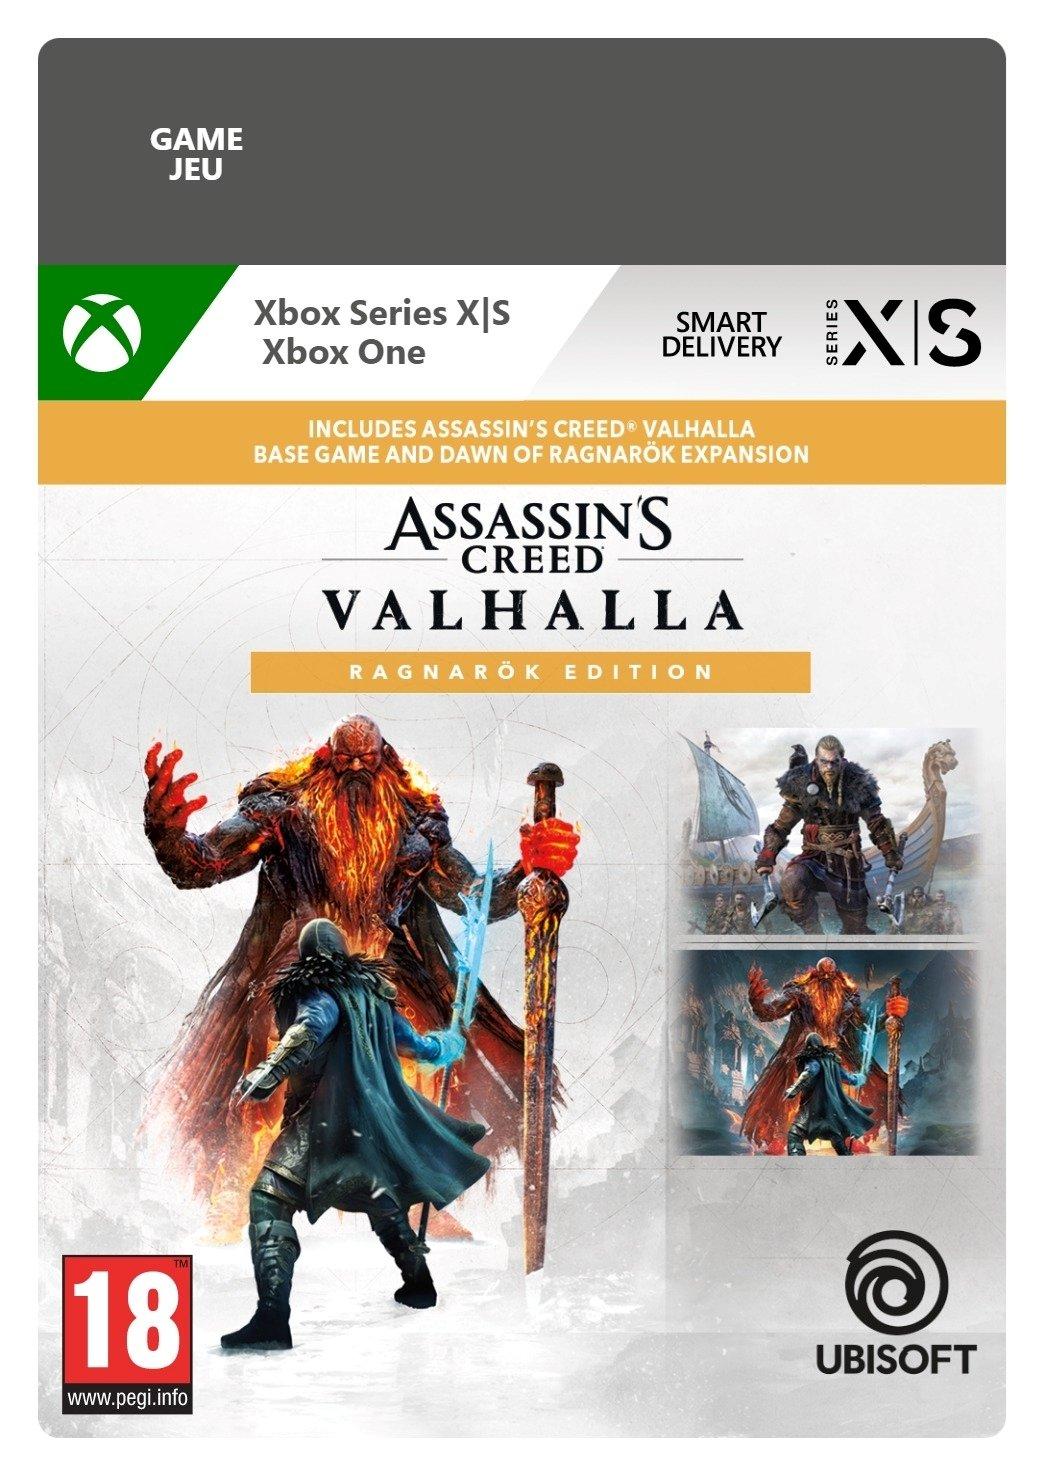 Assassin's Creed Valhalla Ragnarök Edition - Xbox Series X/Xbox One - Game | G3Q-01351 (d6ca659f-cda6-3846-bc08-ee07d54ec788)